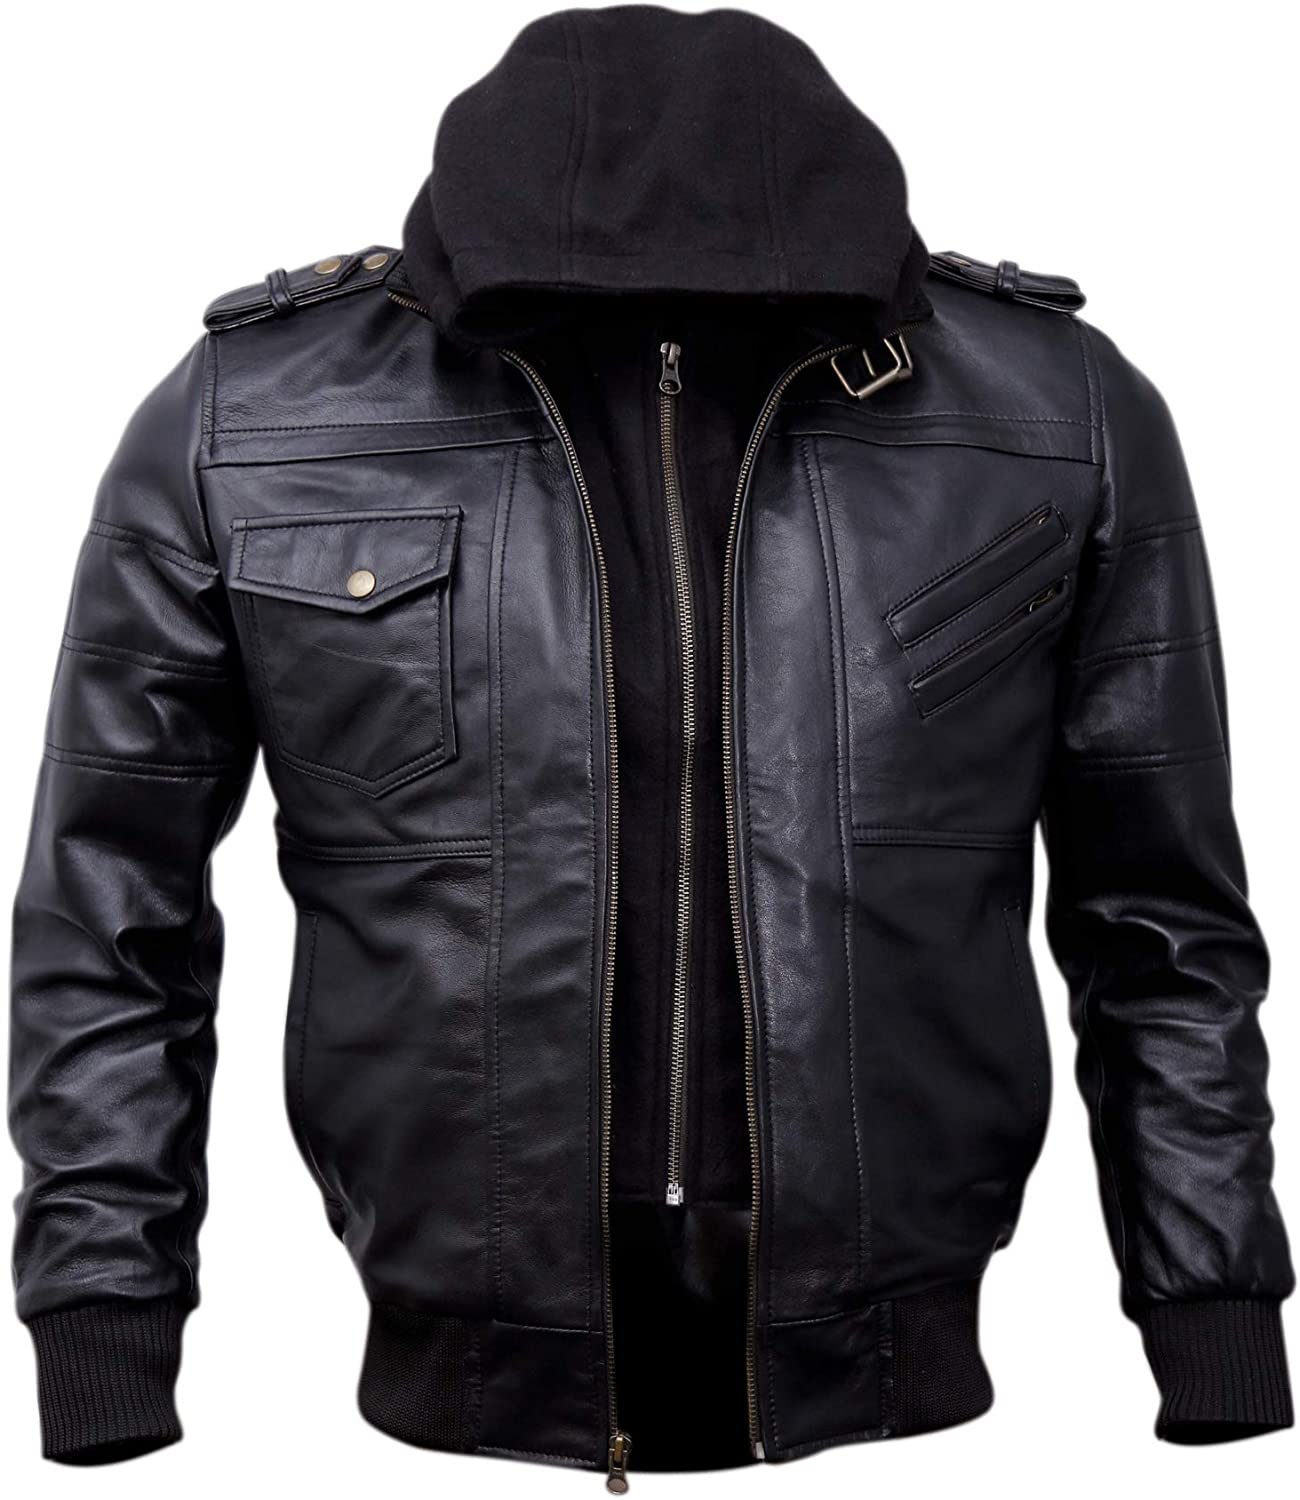 Leather Jacket with hood